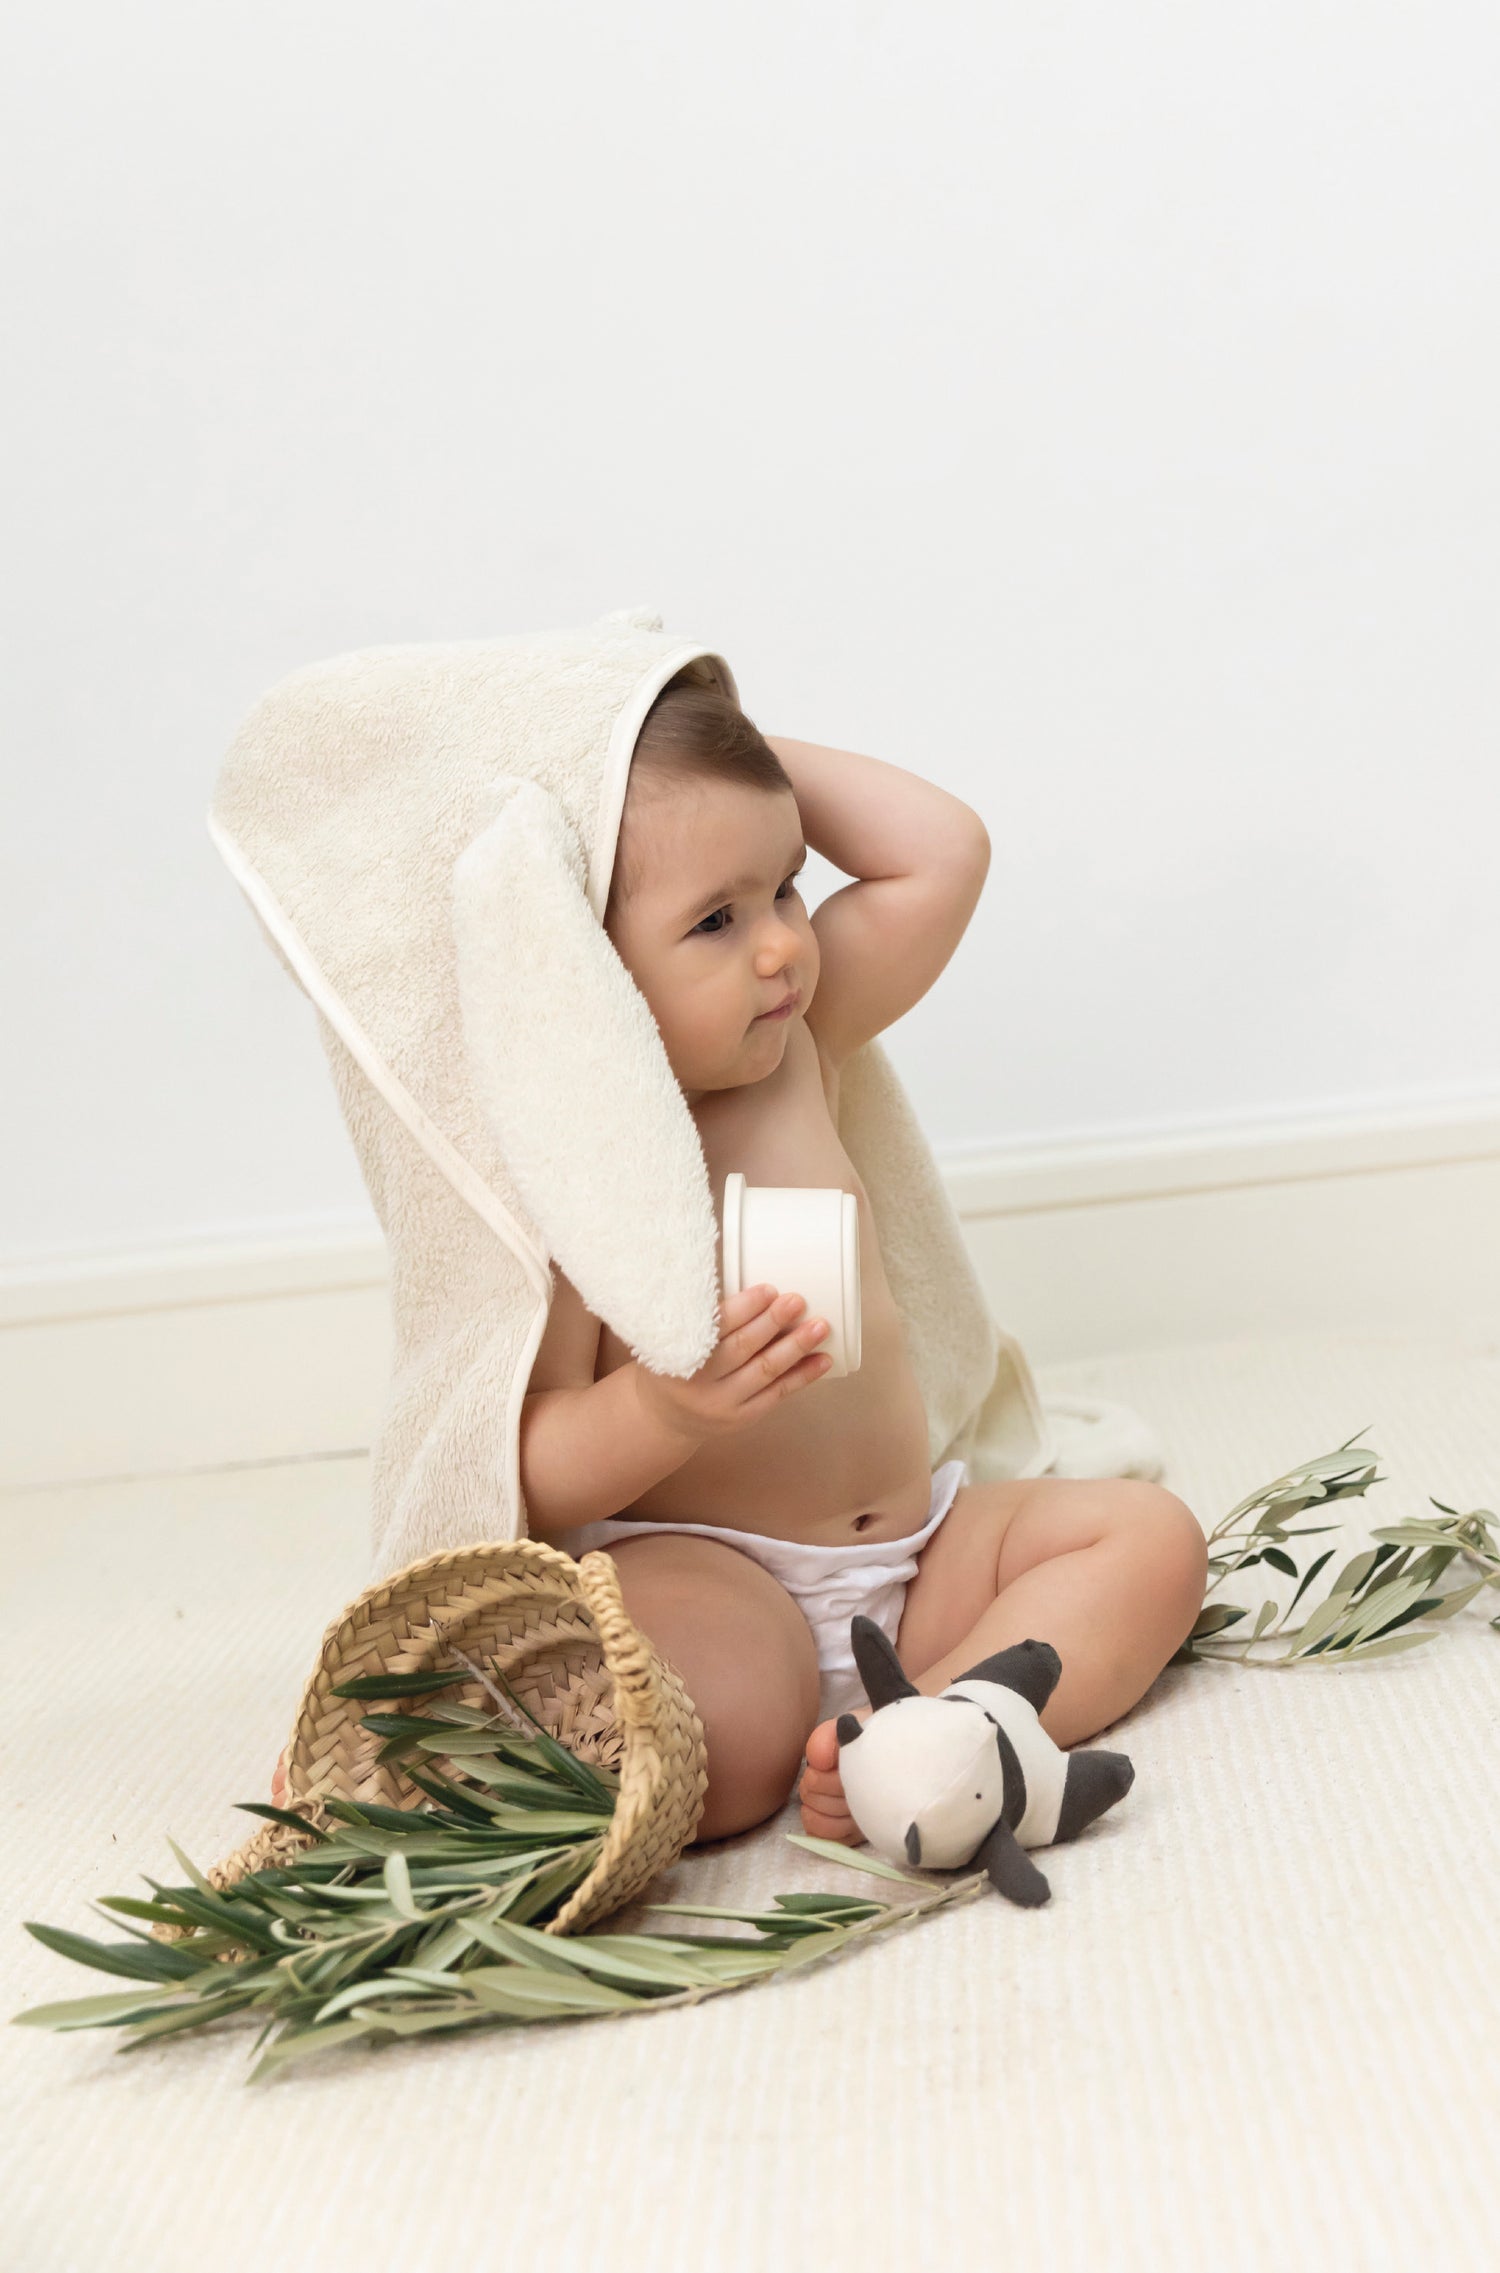 Illustration de la serviette éponge bébé. Un bébé d'environ 8/9 mois avec la cape de bain sur la tête, assis près d'un panier avec feuilles d'Olivier et un petit jouet à la main. Babyshower, made in Europe.